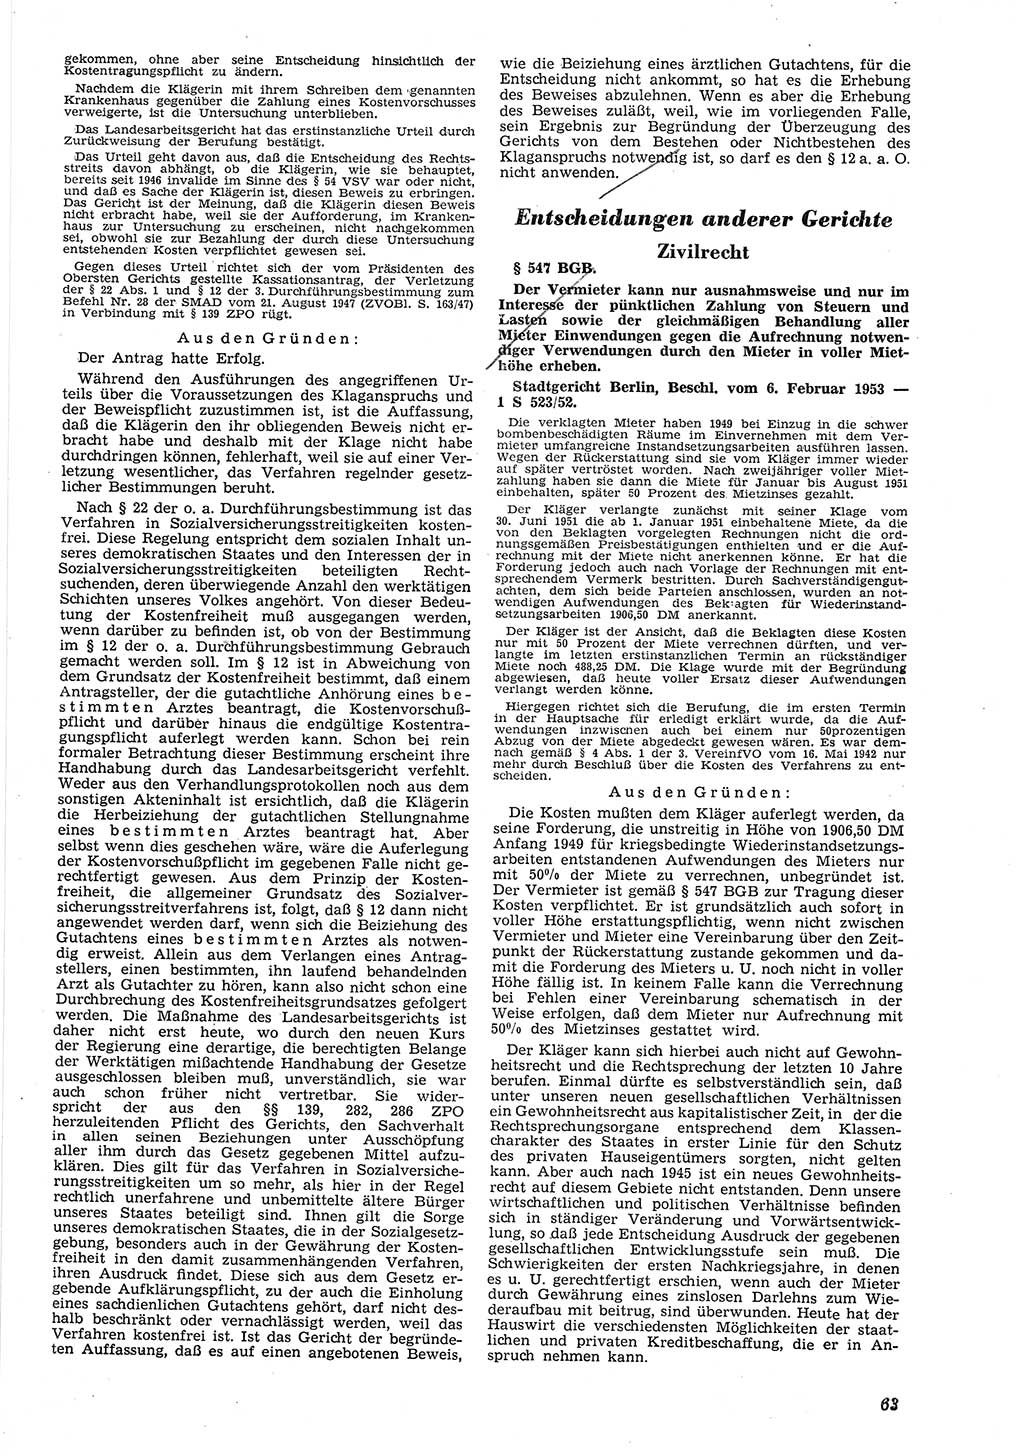 Neue Justiz (NJ), Zeitschrift für Recht und Rechtswissenschaft [Deutsche Demokratische Republik (DDR)], 8. Jahrgang 1954, Seite 63 (NJ DDR 1954, S. 63)